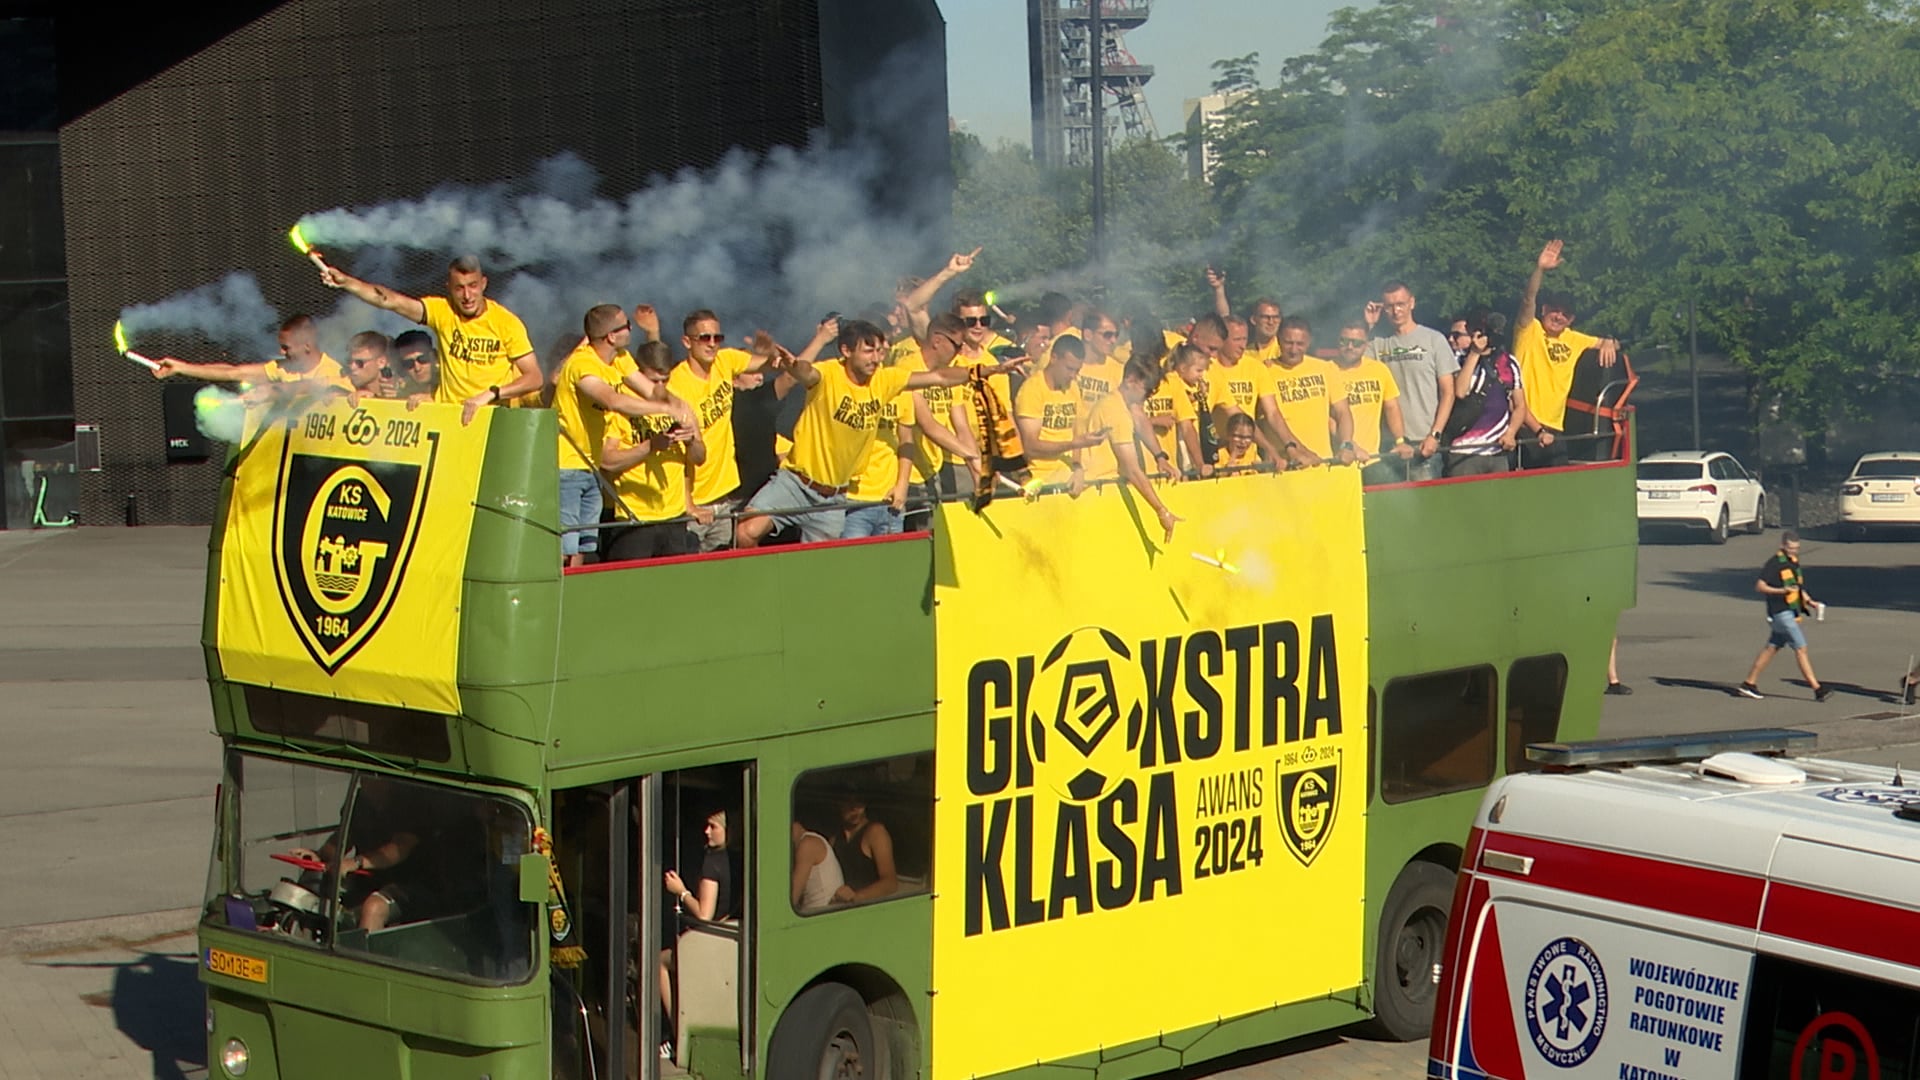 "Tandeta jest najgorsza" - GKS Katowice w Ekstraklasie.